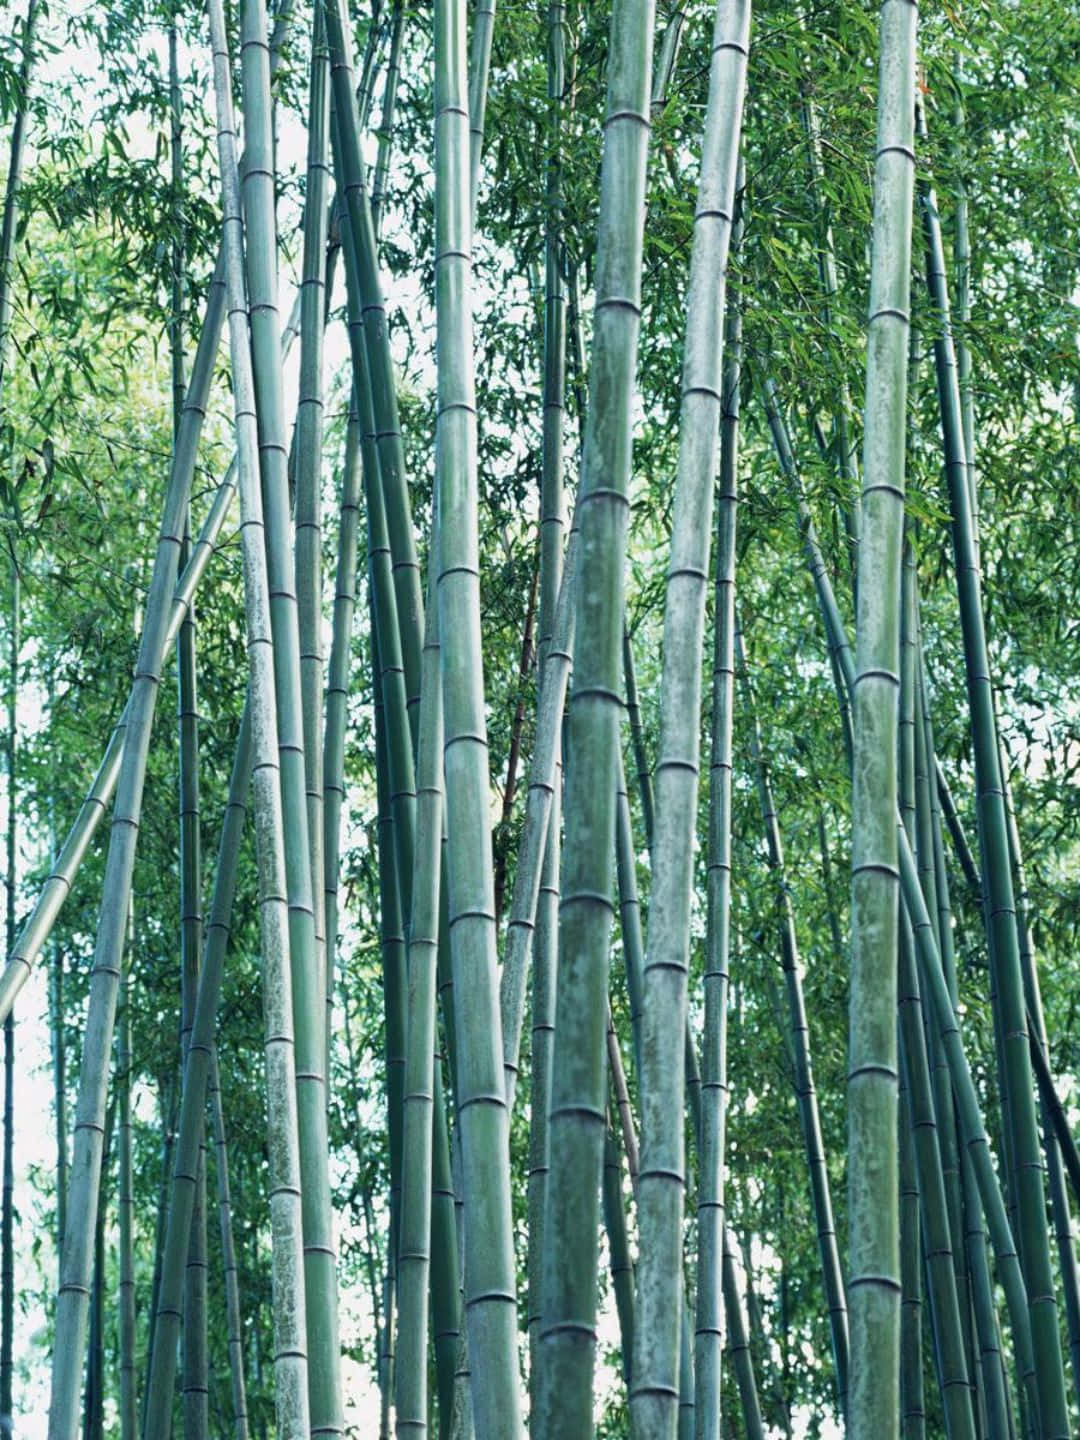 1440pbambus Hintergrund Bambusbäume Mit Grauen Stämmen